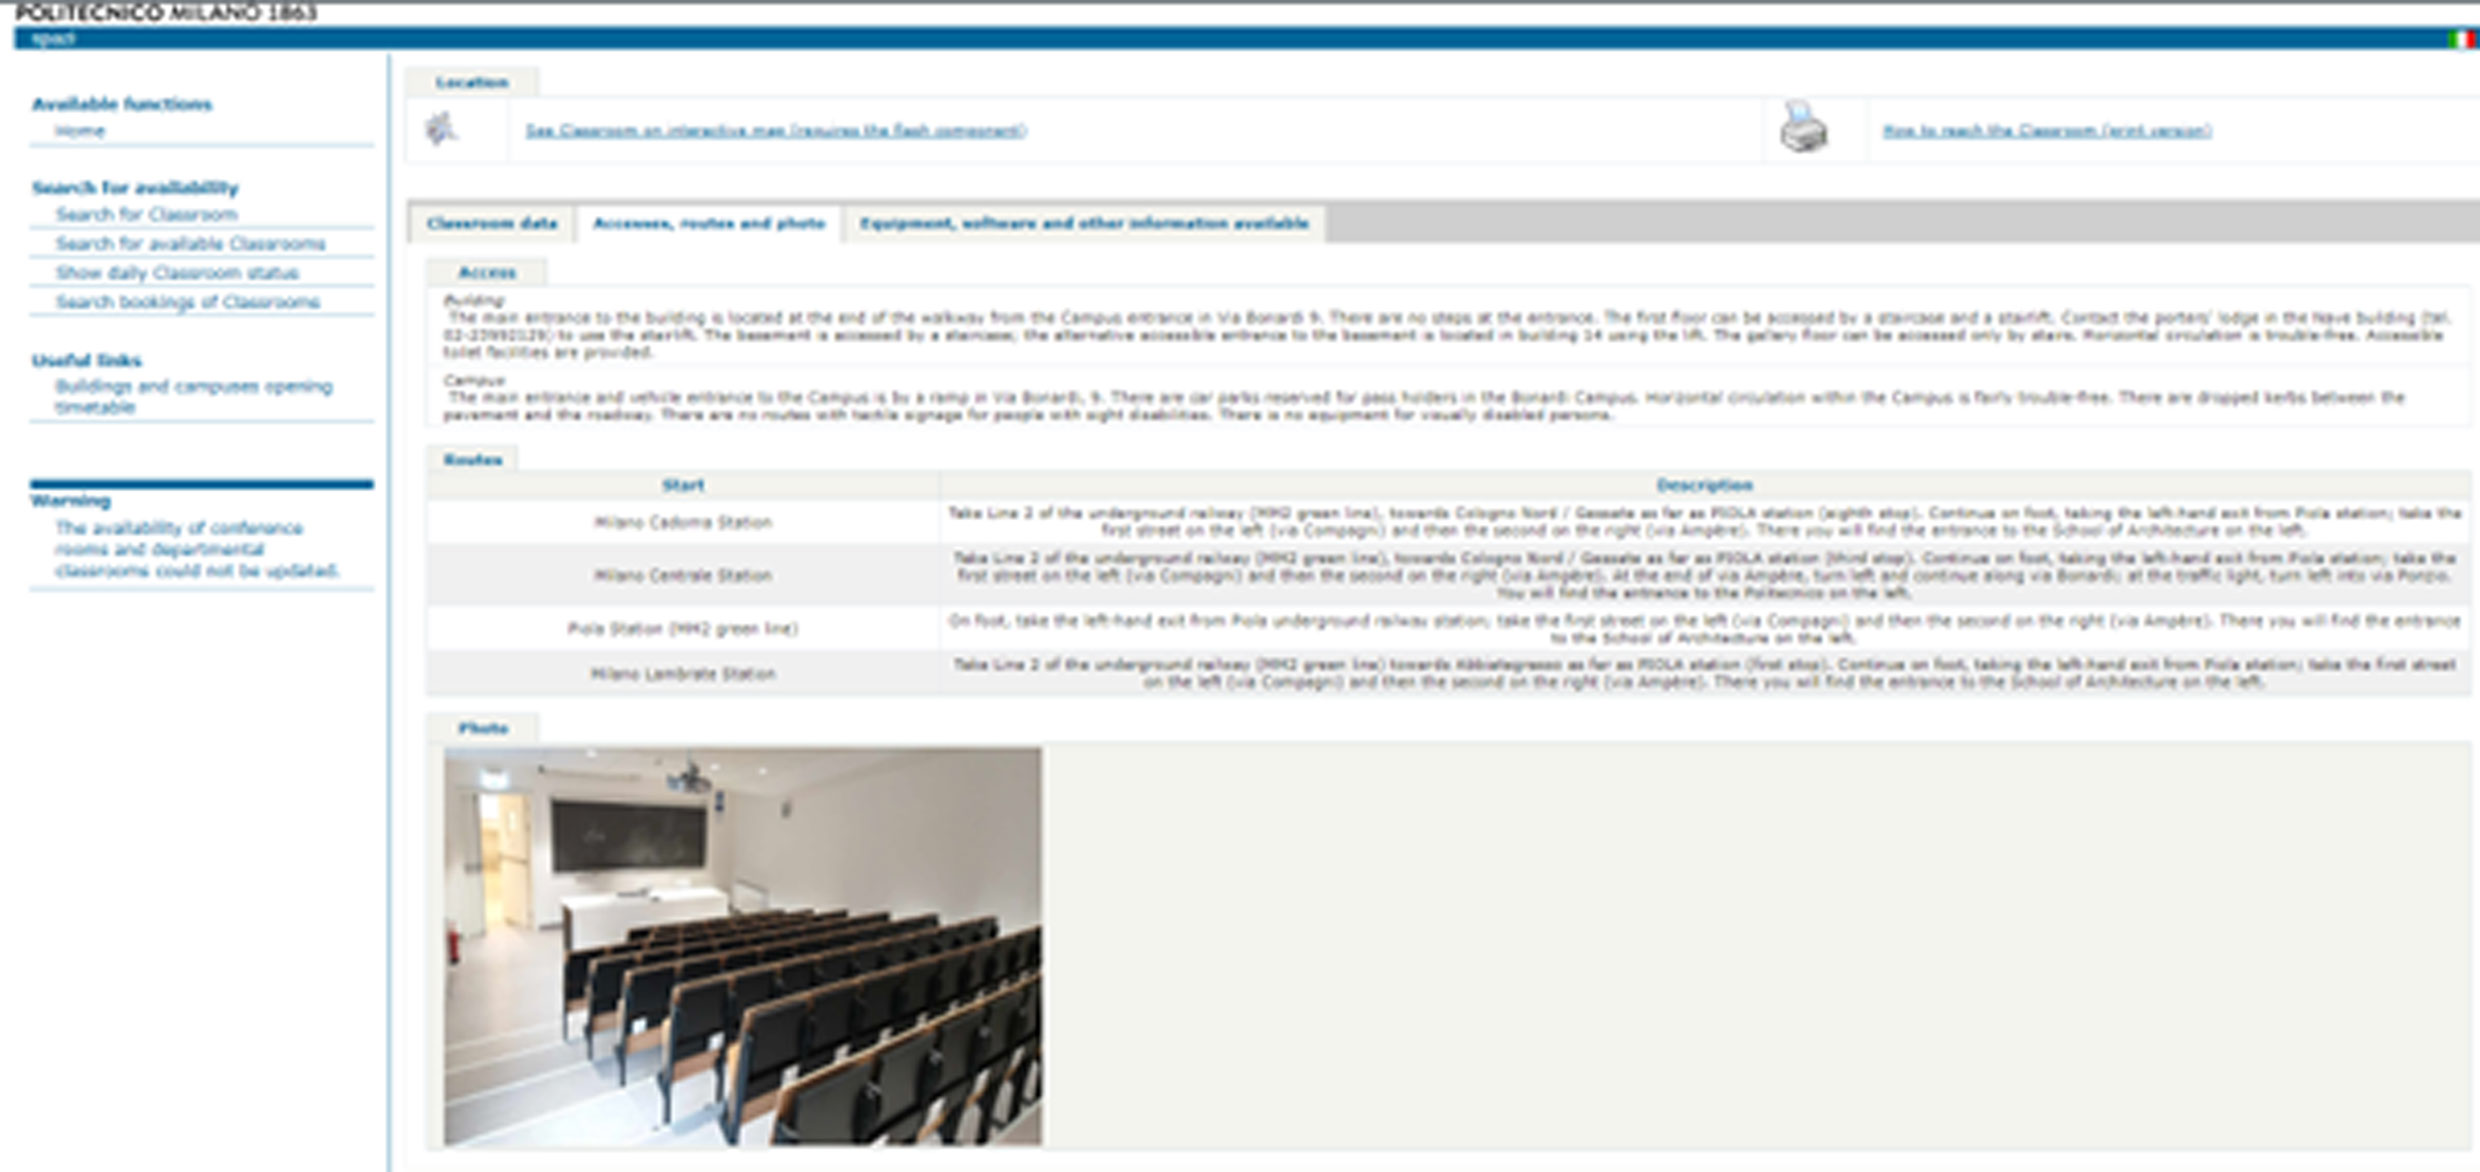 zrzut ekranu z systemu informatycznego zwierającego opracowania architektury kampusów Politechniki w Mediolanie, zakładka z dokładny opisem dostępności jednej z sal